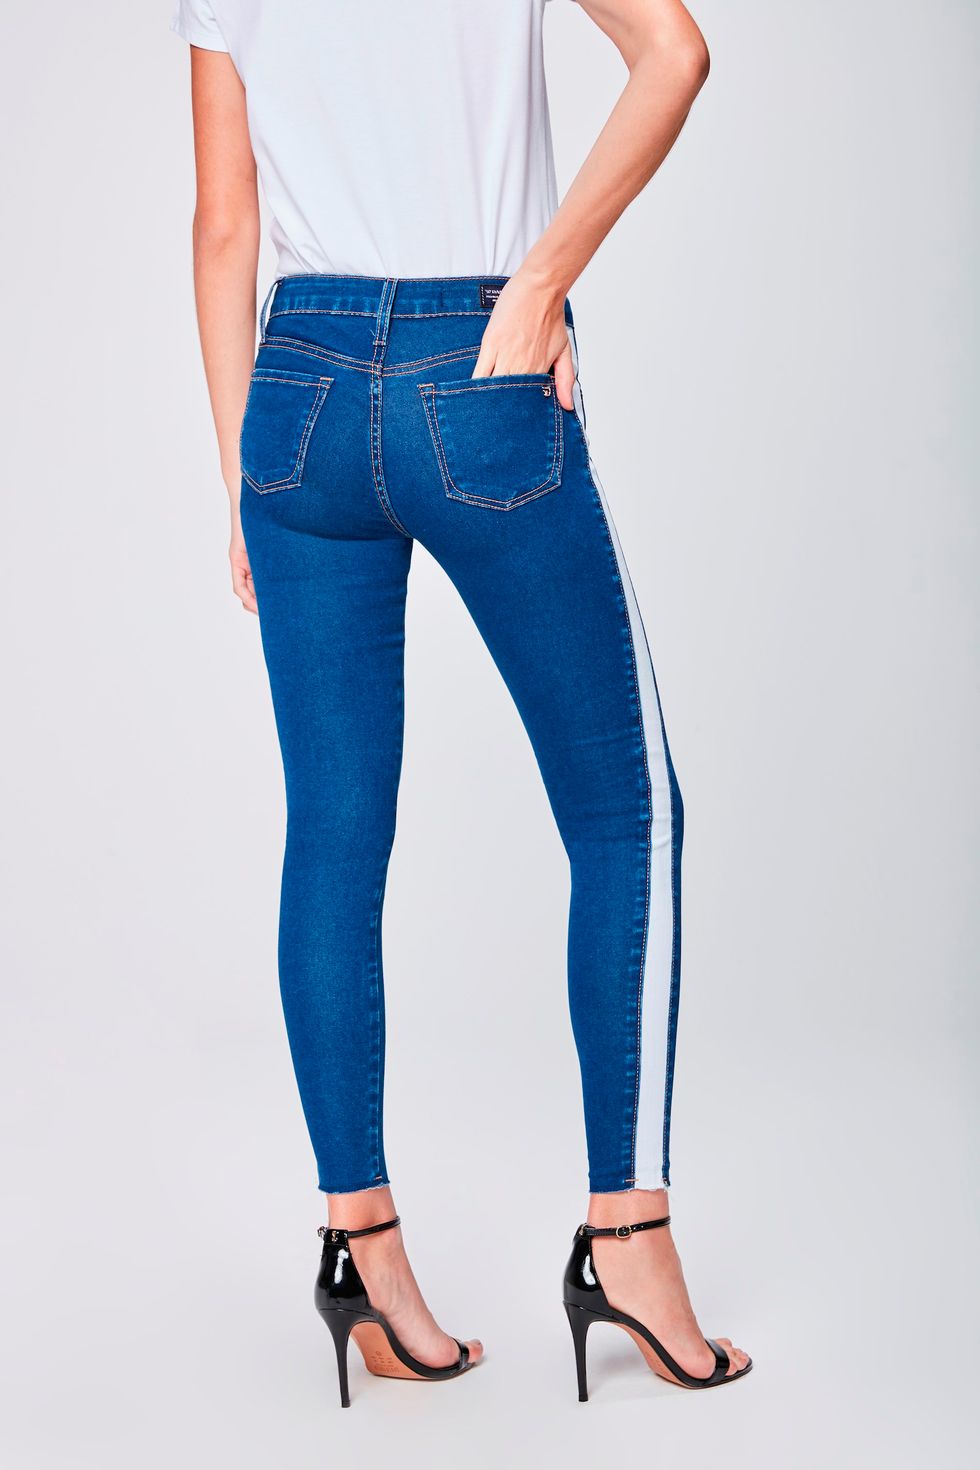 calças jeans femininas cintura alta